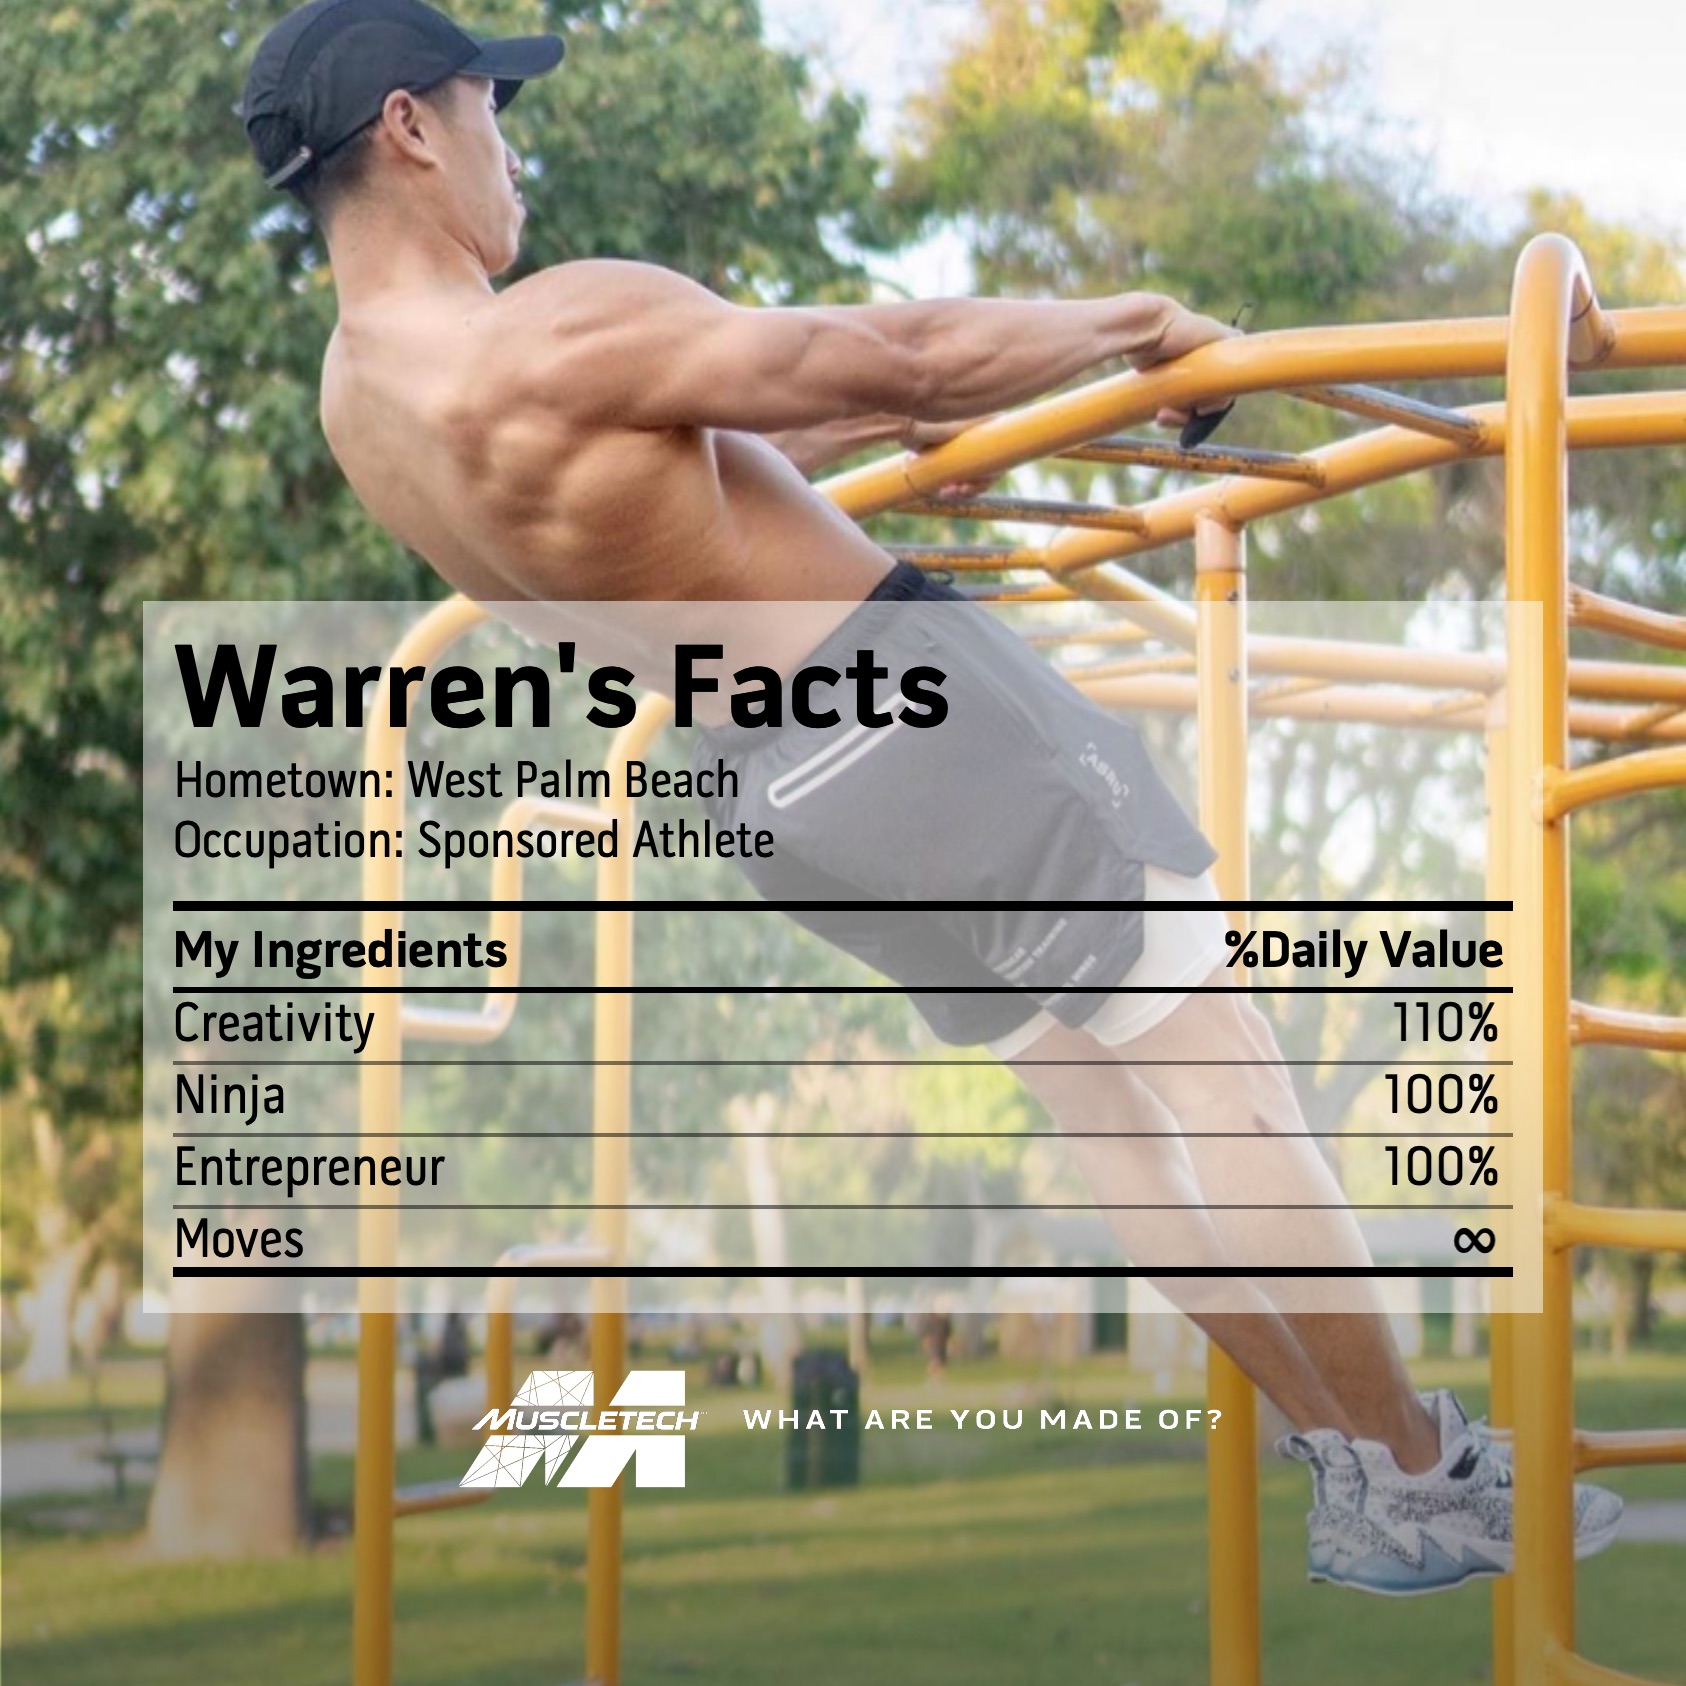 Warren's Facts